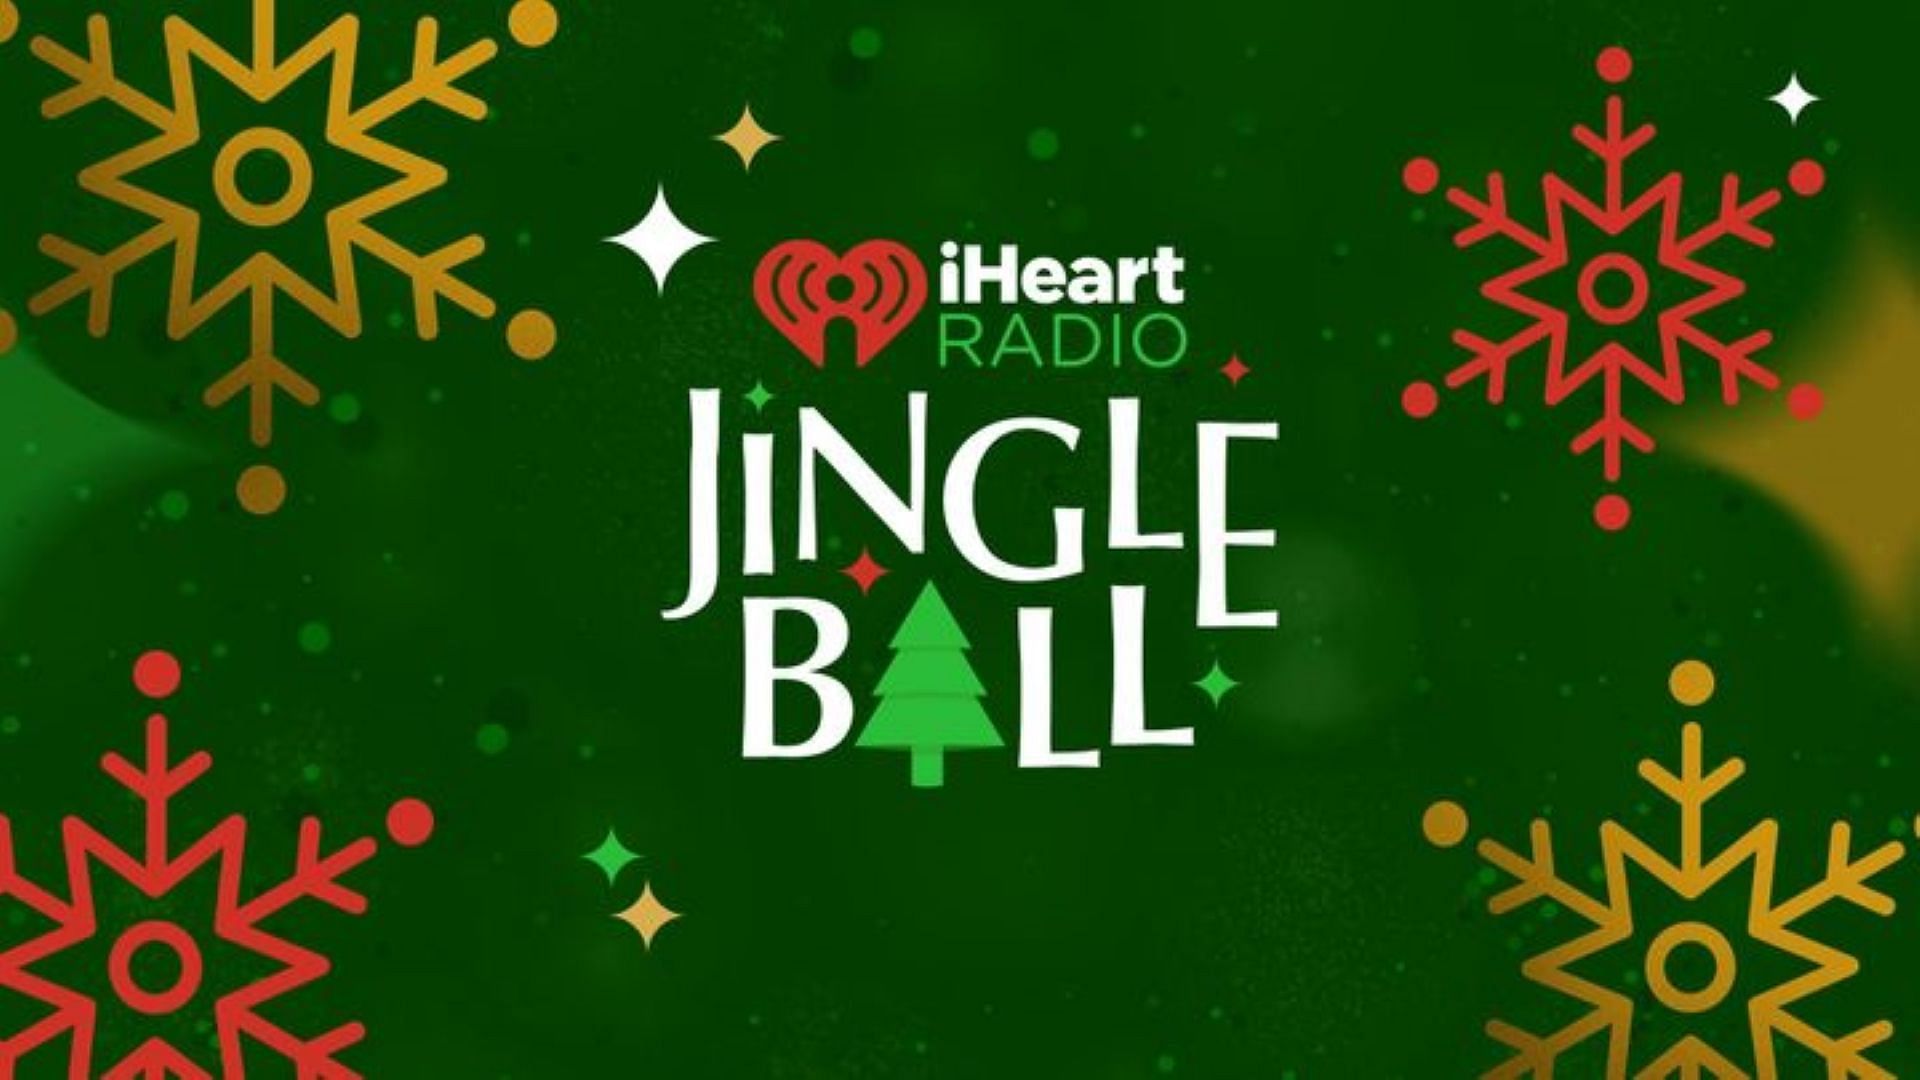 A poster for Jingle Ball (Image via IHeartRadio)